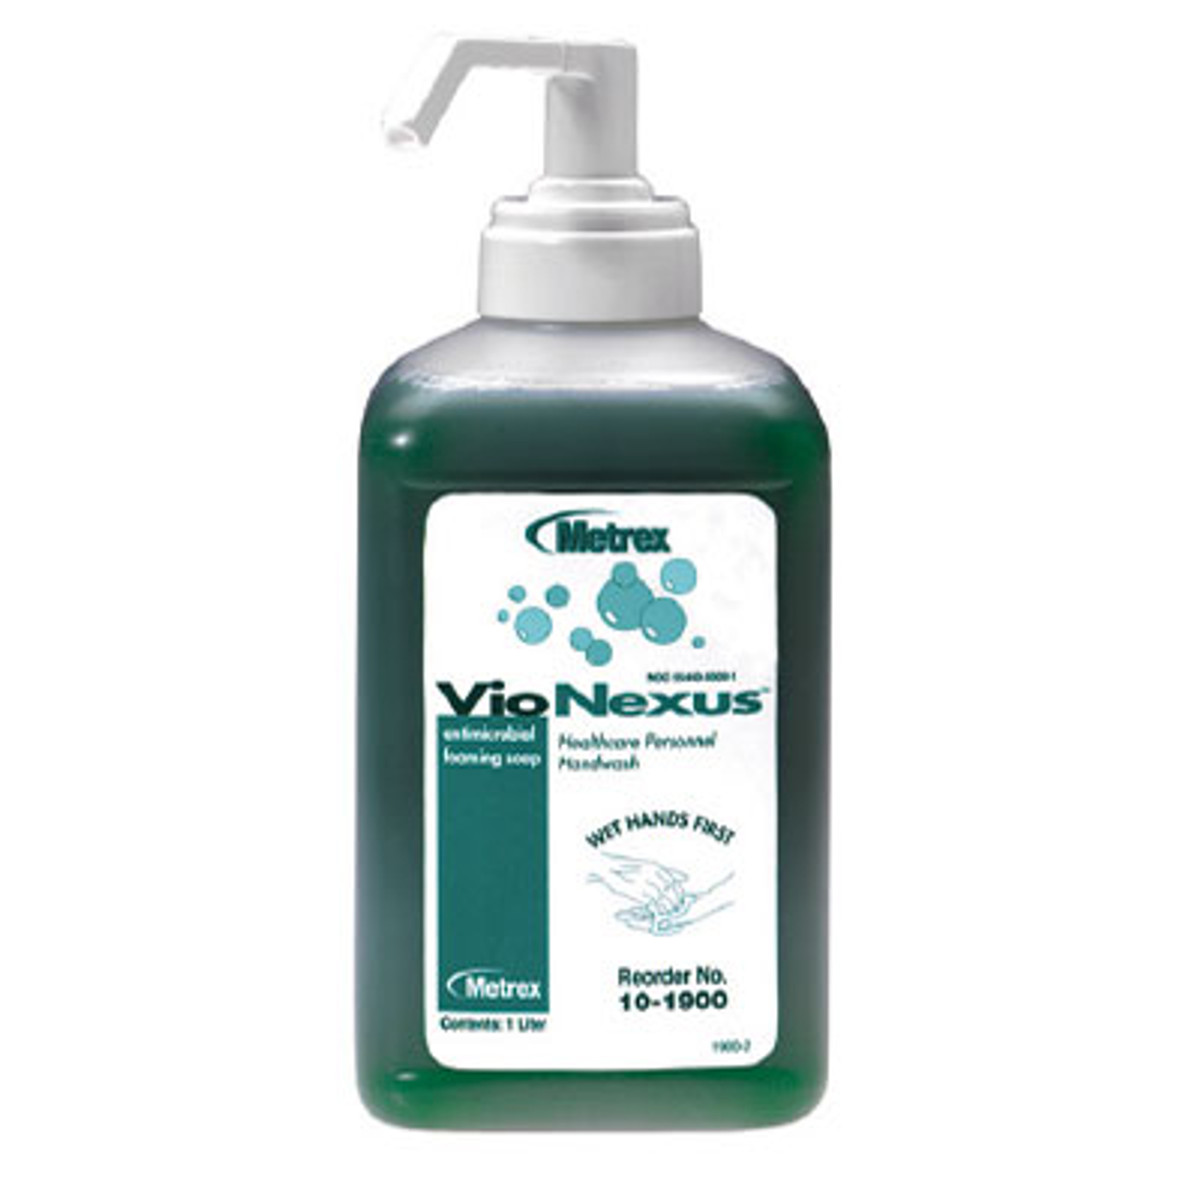 Metrex VioNexus Antimicrobial Foaming Soap